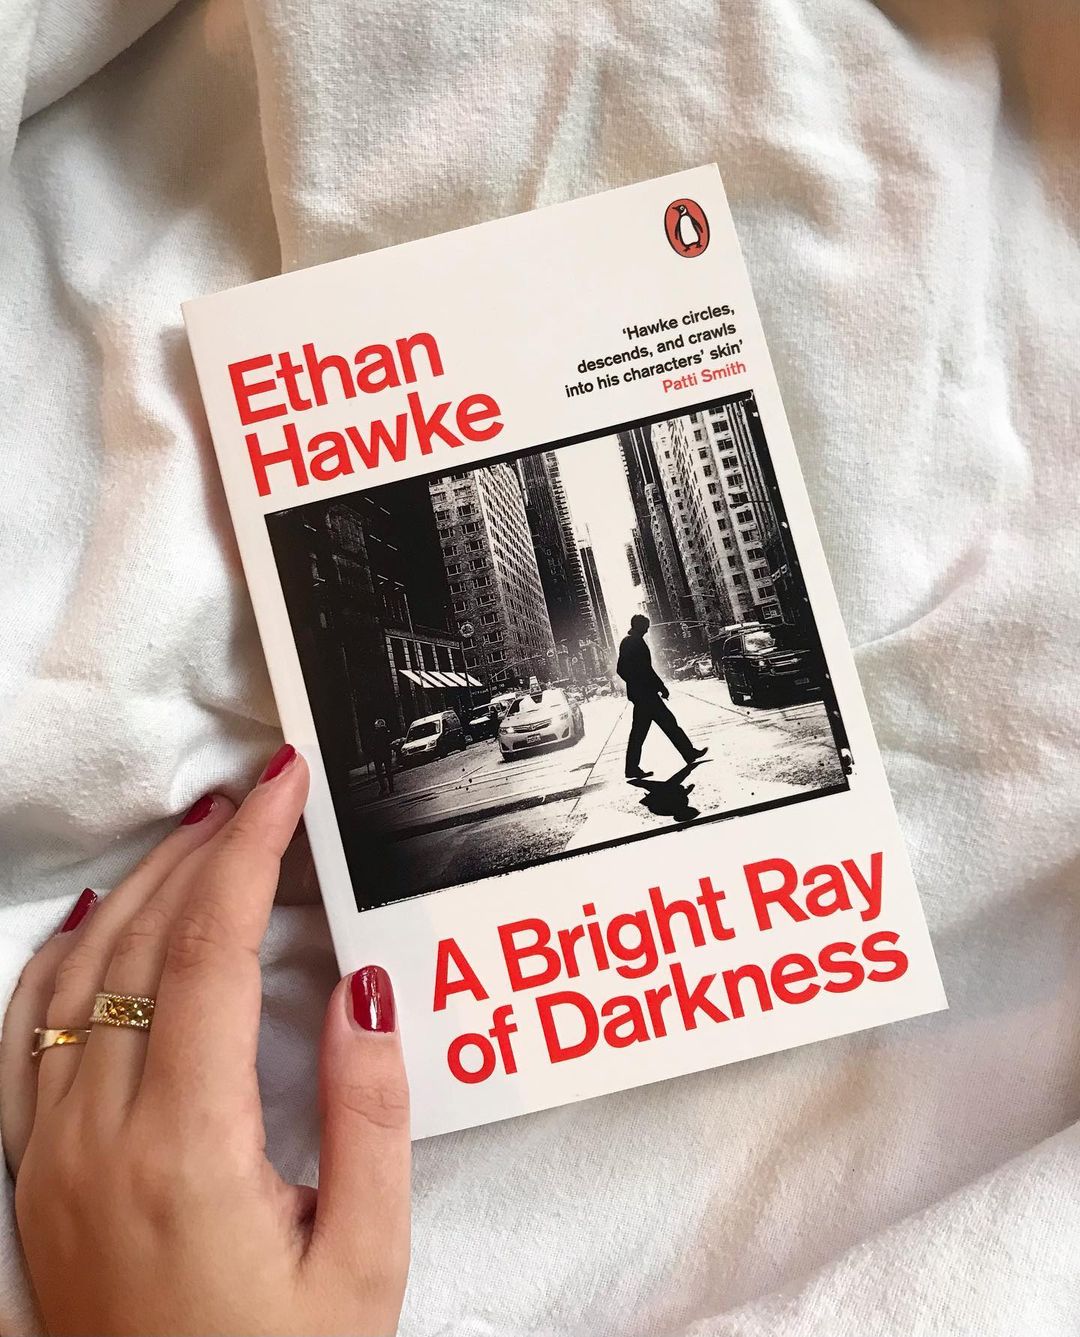 Znate li da je Ethan Hawke uspješan pisac? Ilina Cenov donosi nam recenziju njegove posljednje knjige